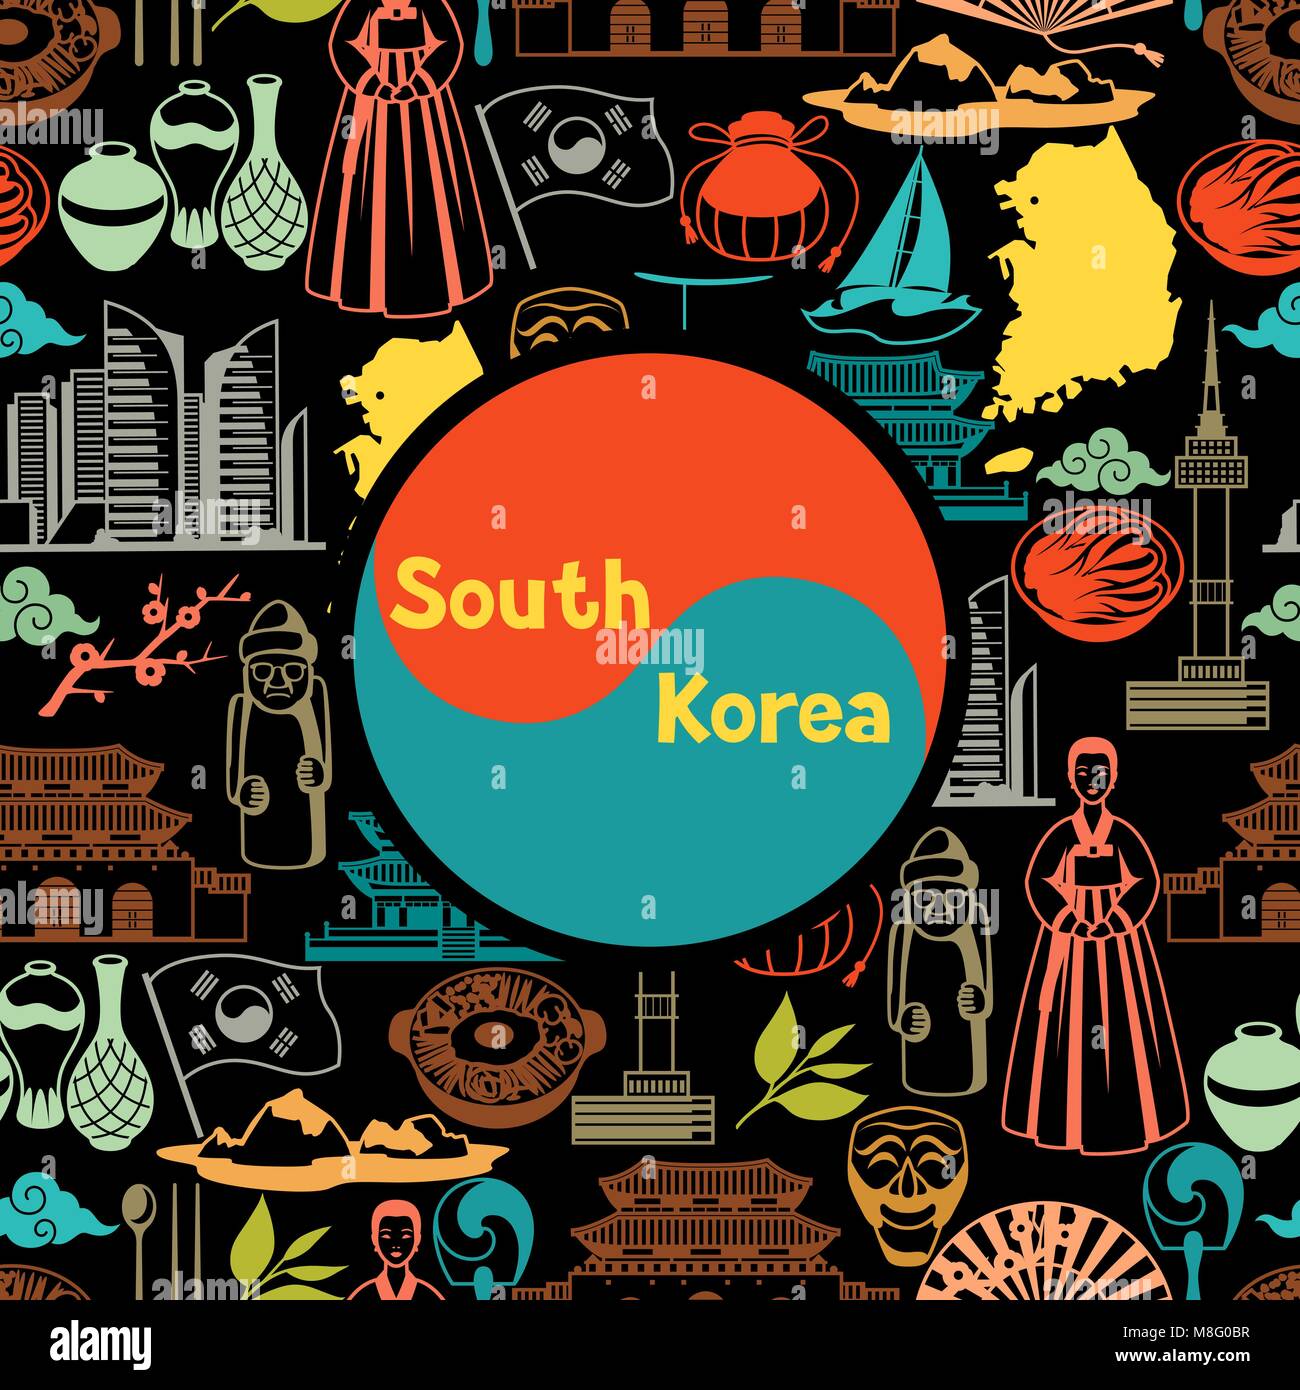 Nếu bạn muốn đắm mình trong văn hóa truyền thống Hàn Quốc, hãy xem qua các tượng trưng và đồ vật truyền thống Hàn Quốc. Từ chiếc áo hanbok đầy màu sắc đến bàn thờ độc đáo, những đối tượng này được tôn vinh trong văn hóa Hàn Quốc. Hãy để bản thân được mê hoặc bởi những điều độc đáo này. 